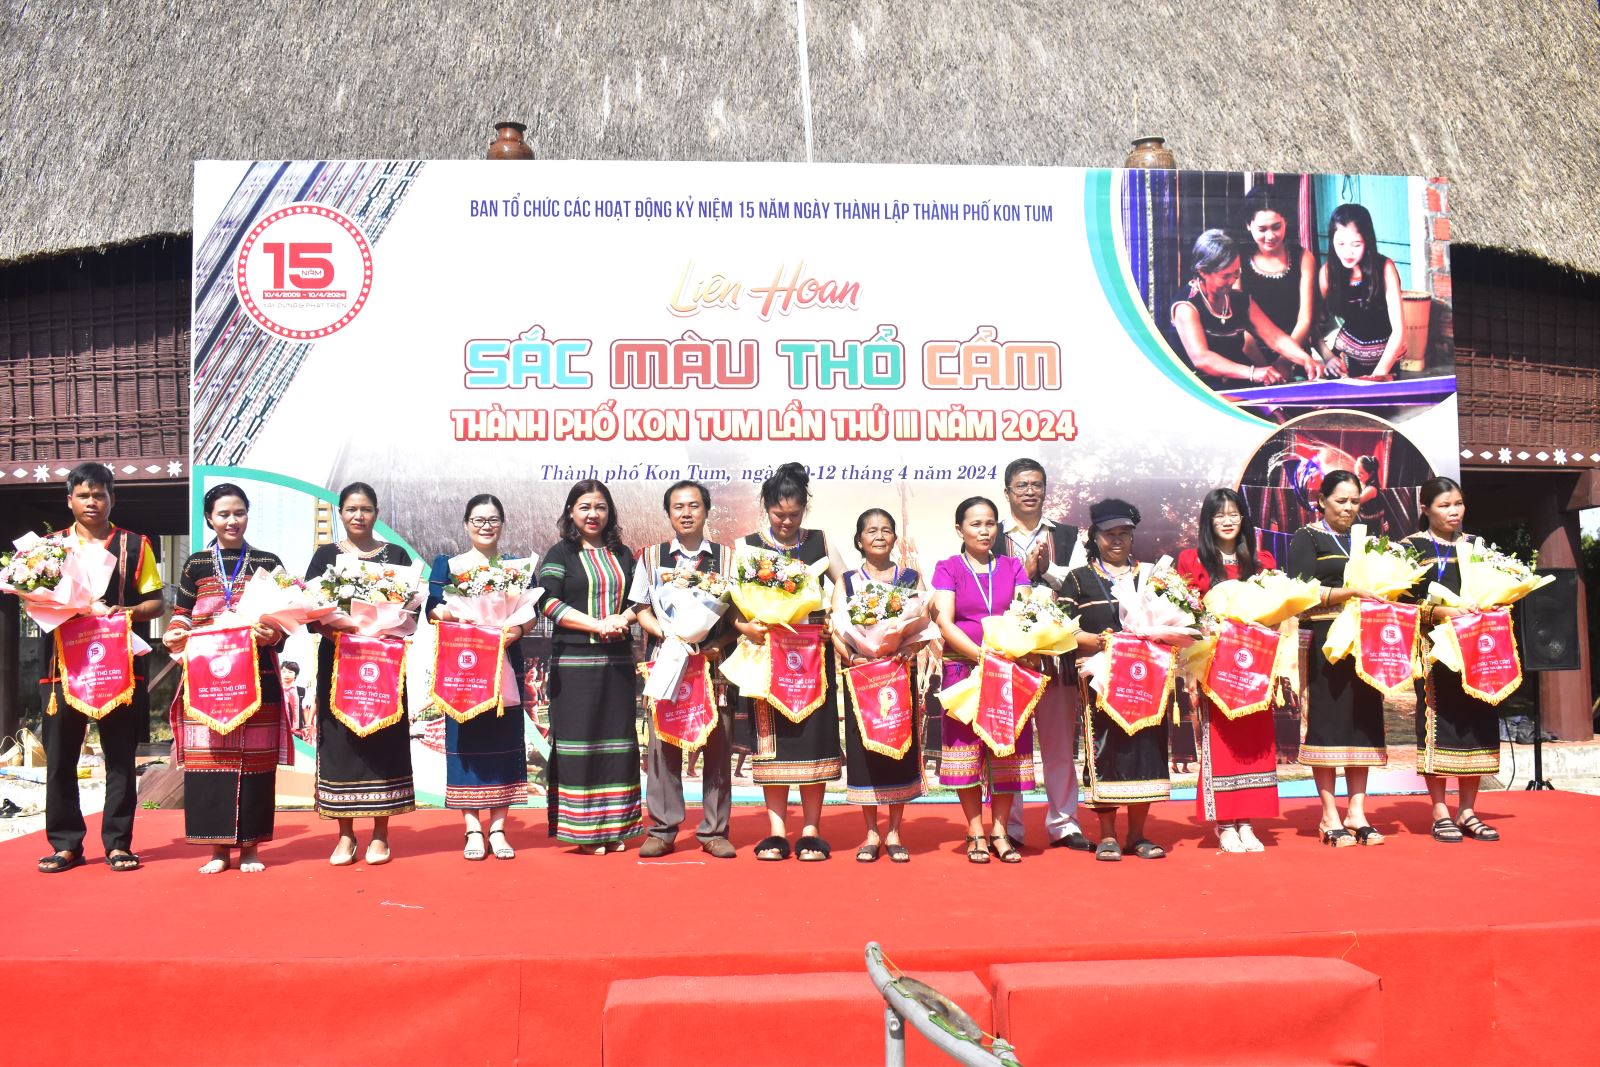 Khai mạc Liên hoan Sắc màu thổ cẩm chào mừng kỷ niệm 15 năm thành lập thành phố Kon Tum